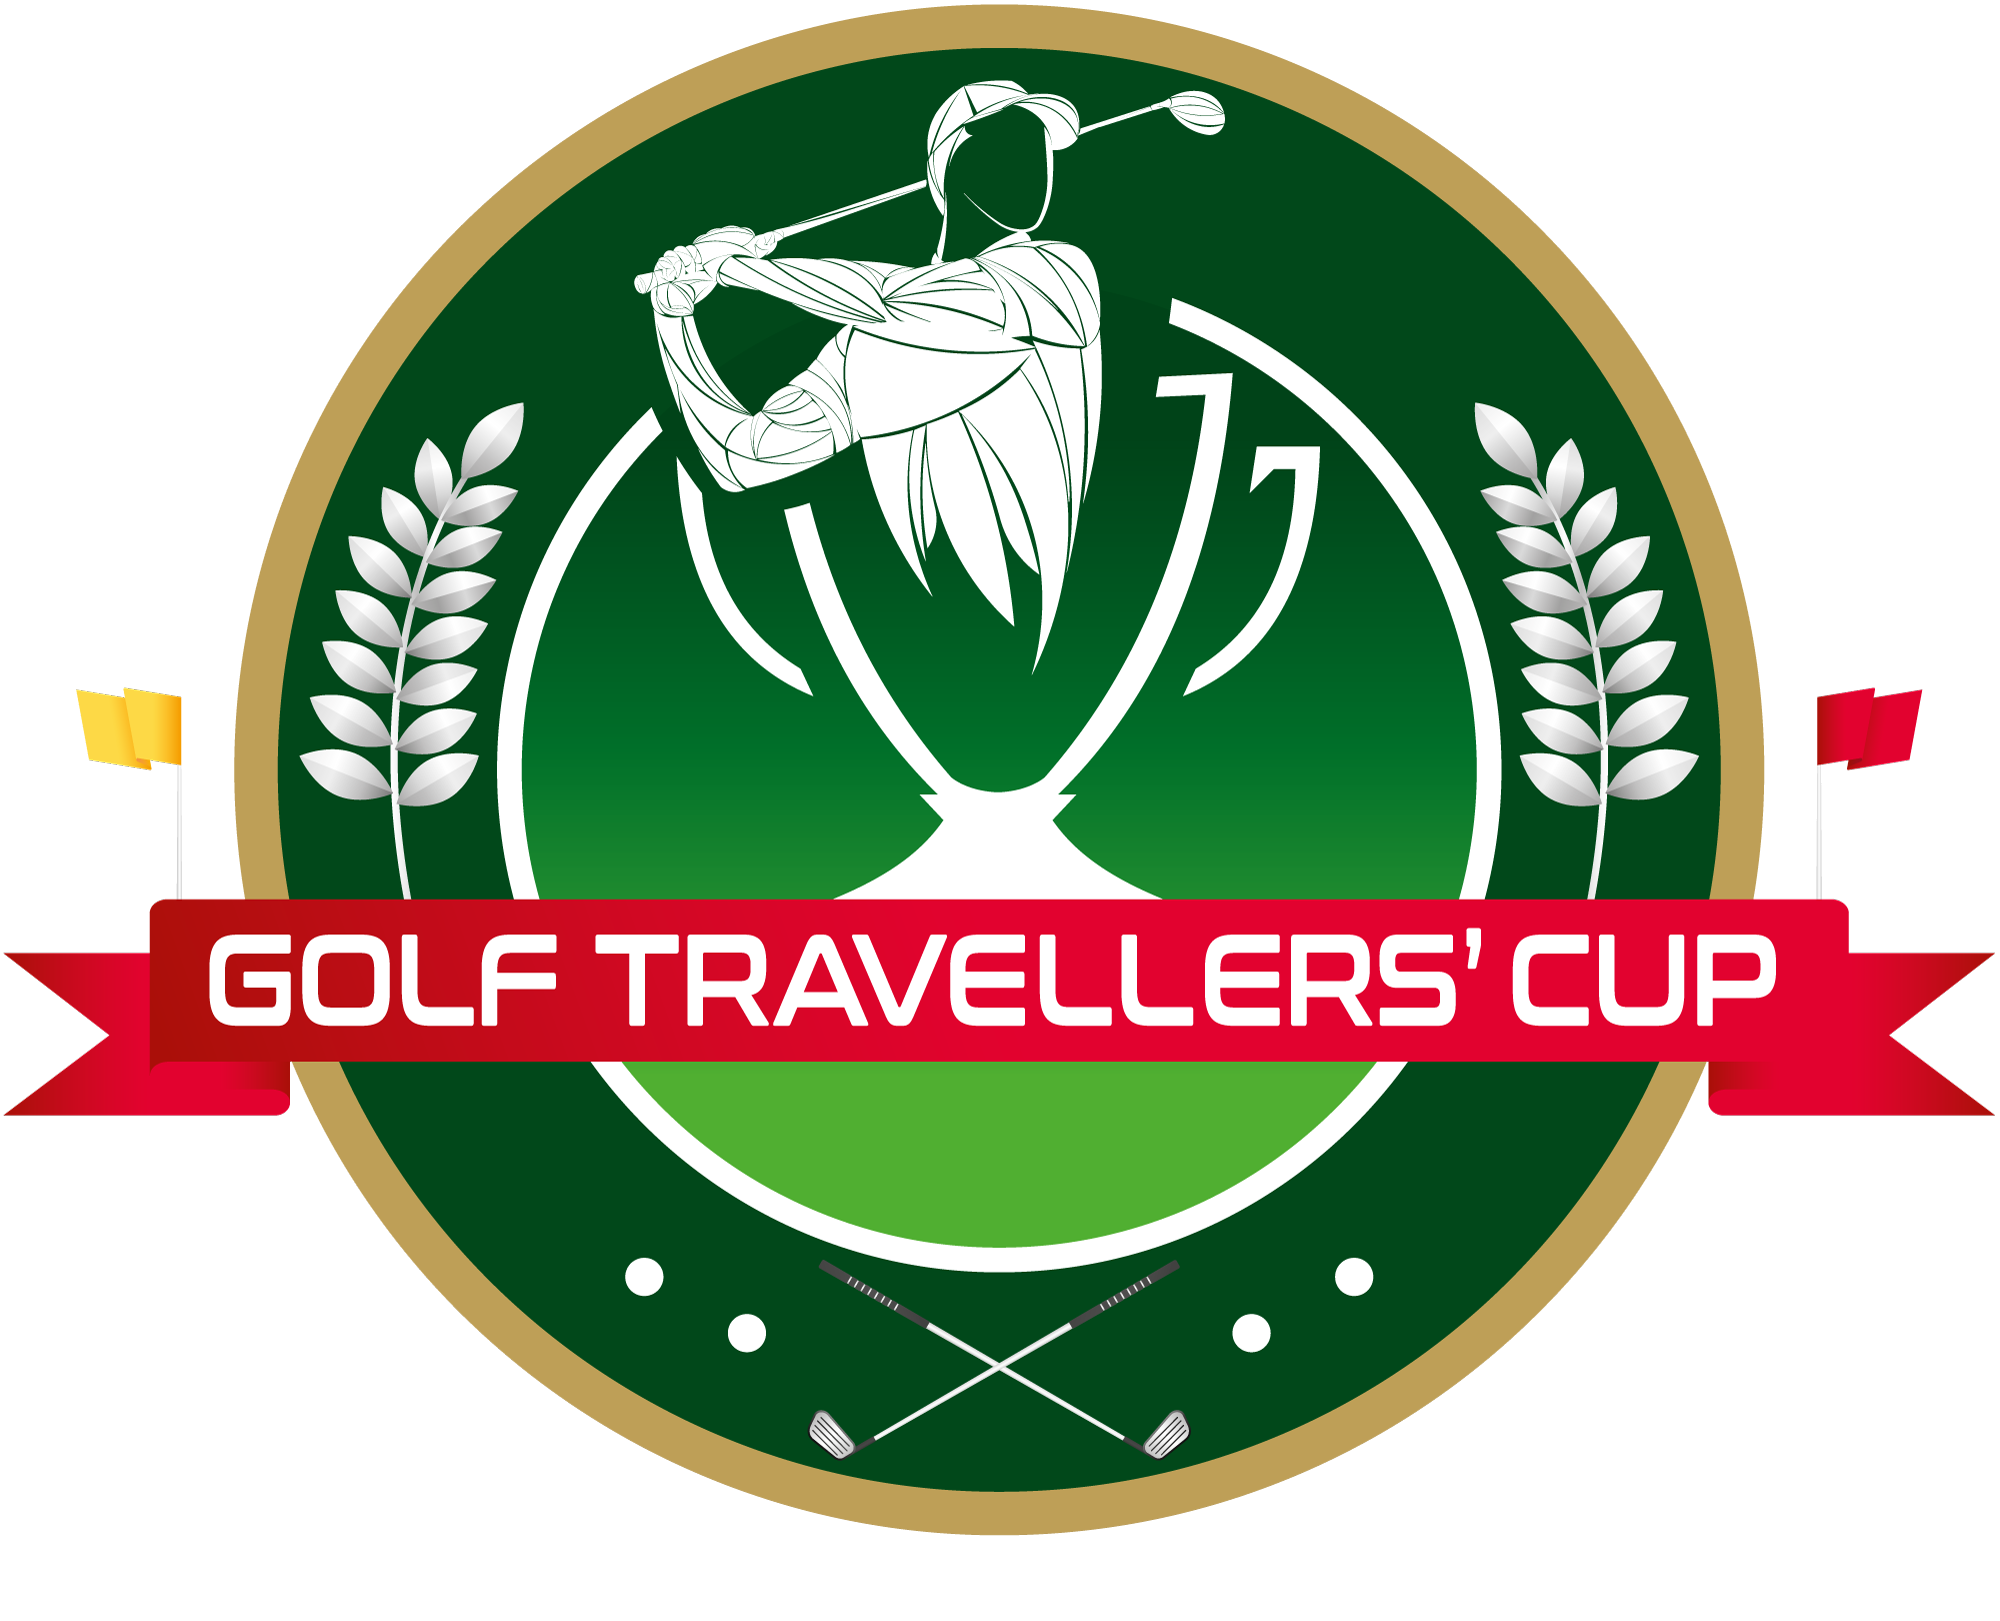 Golf Travellers'Cup, Compétition et séjour golfique à Marrakech